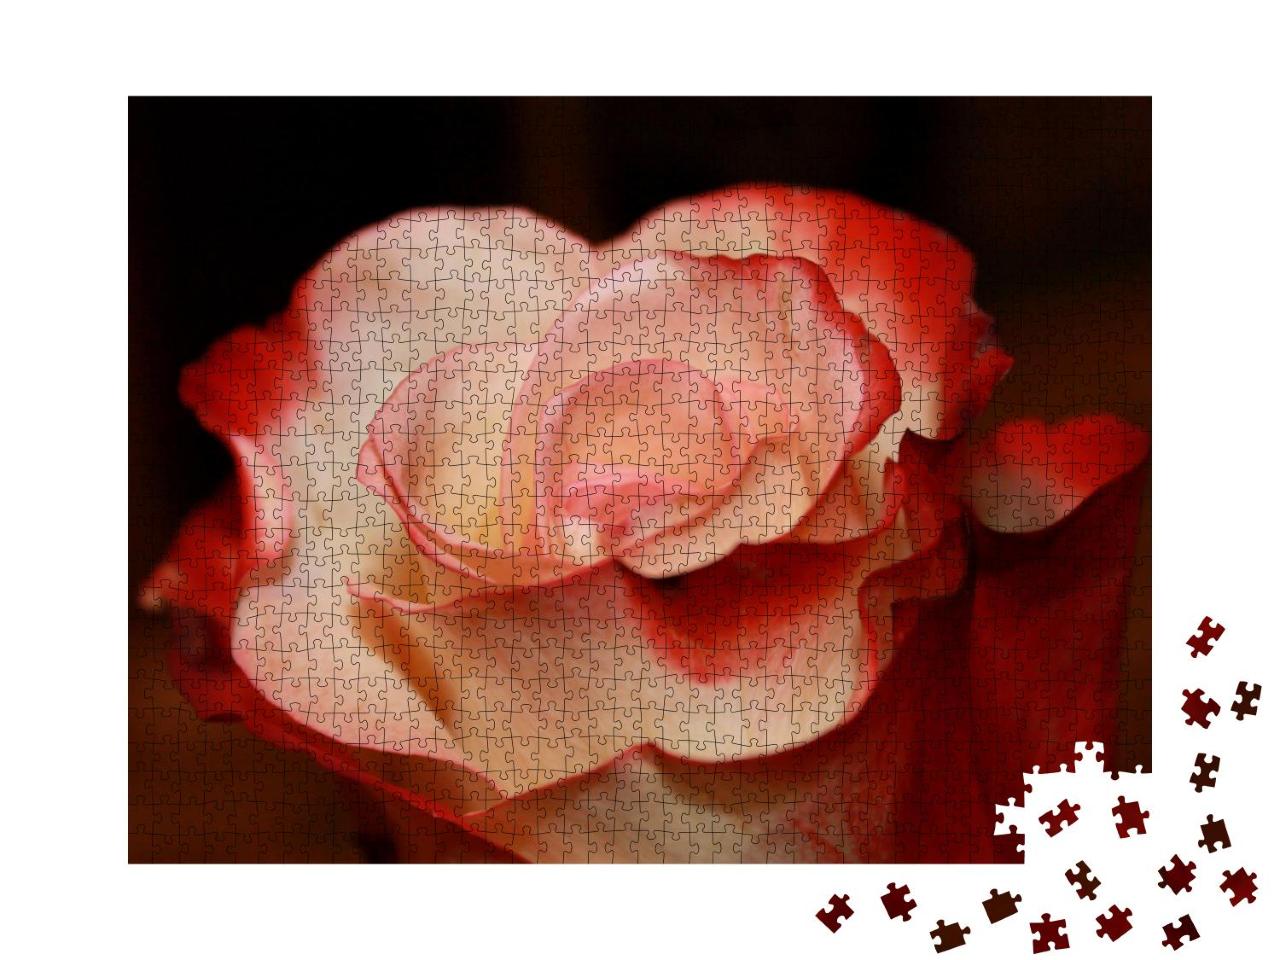 Puzzle 1000 Teile „Leuchtend rote und weiße Rose“